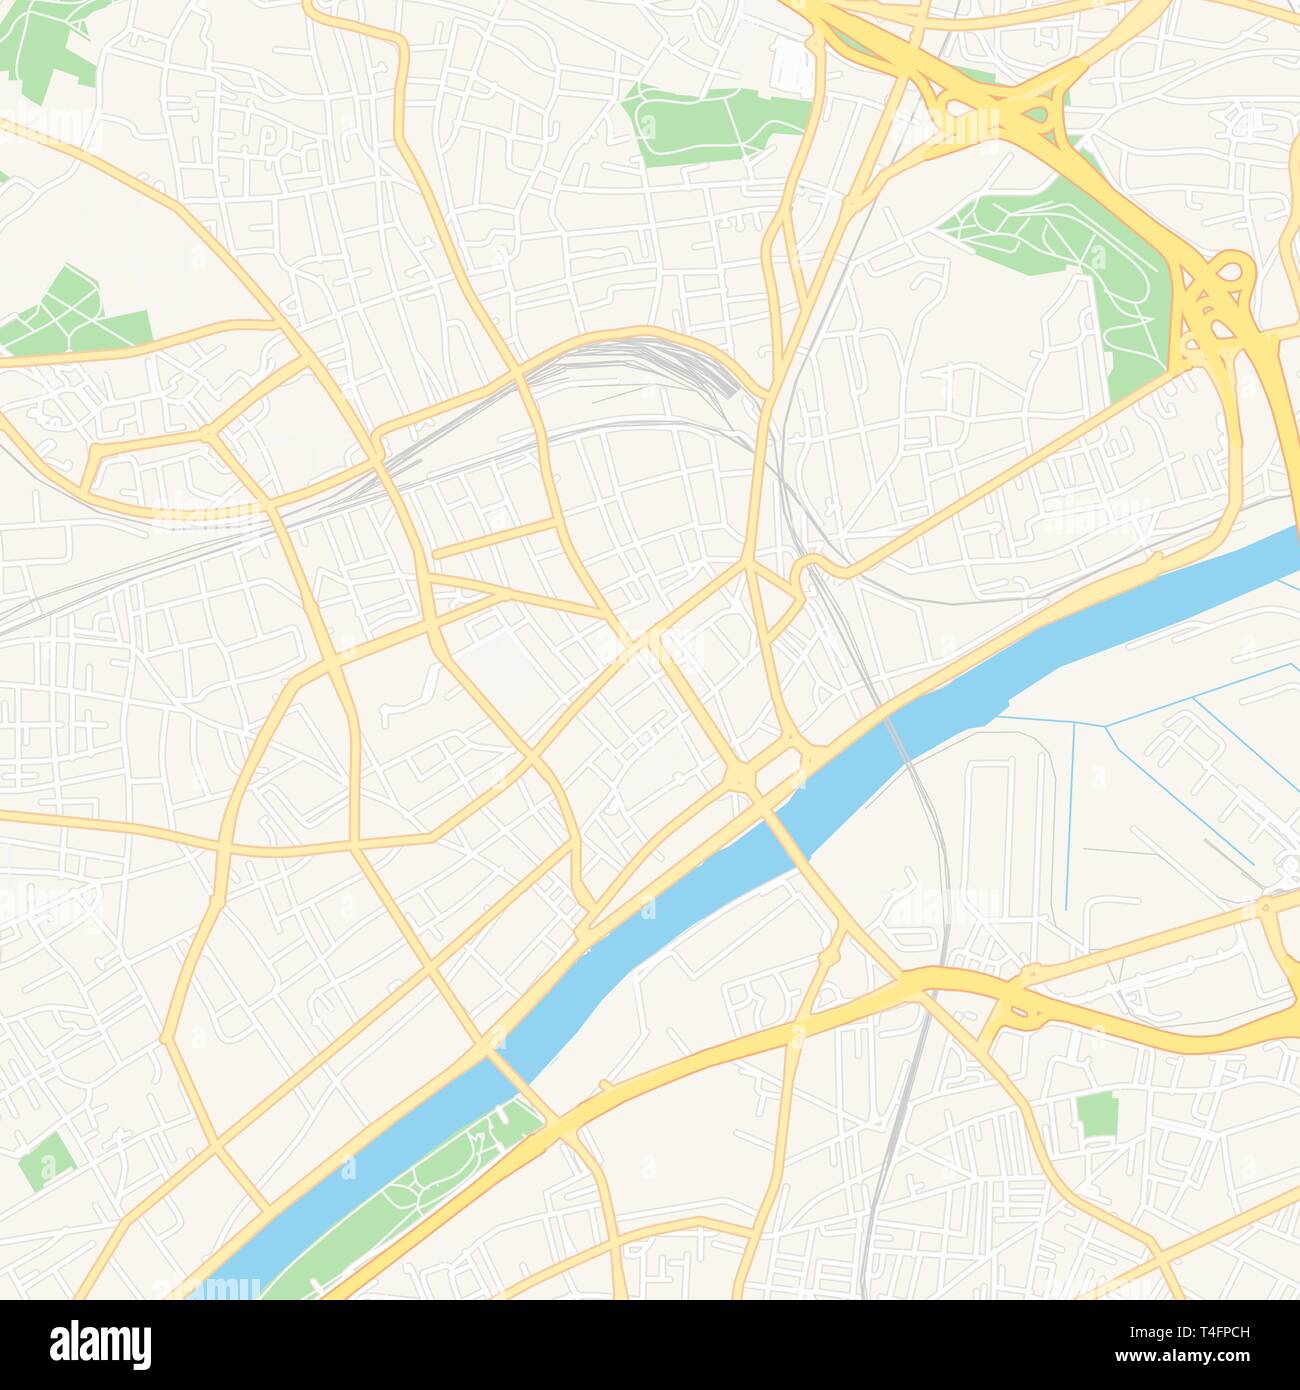 Druckbare Karte von Argenteuil, Frankreich mit Haupt- und Nebenstraßen und größere Bahnen. Diese Karte ist sorgfältig für Routing und Inverkehrbringen Champagnerkelch konzipiert Stock Vektor